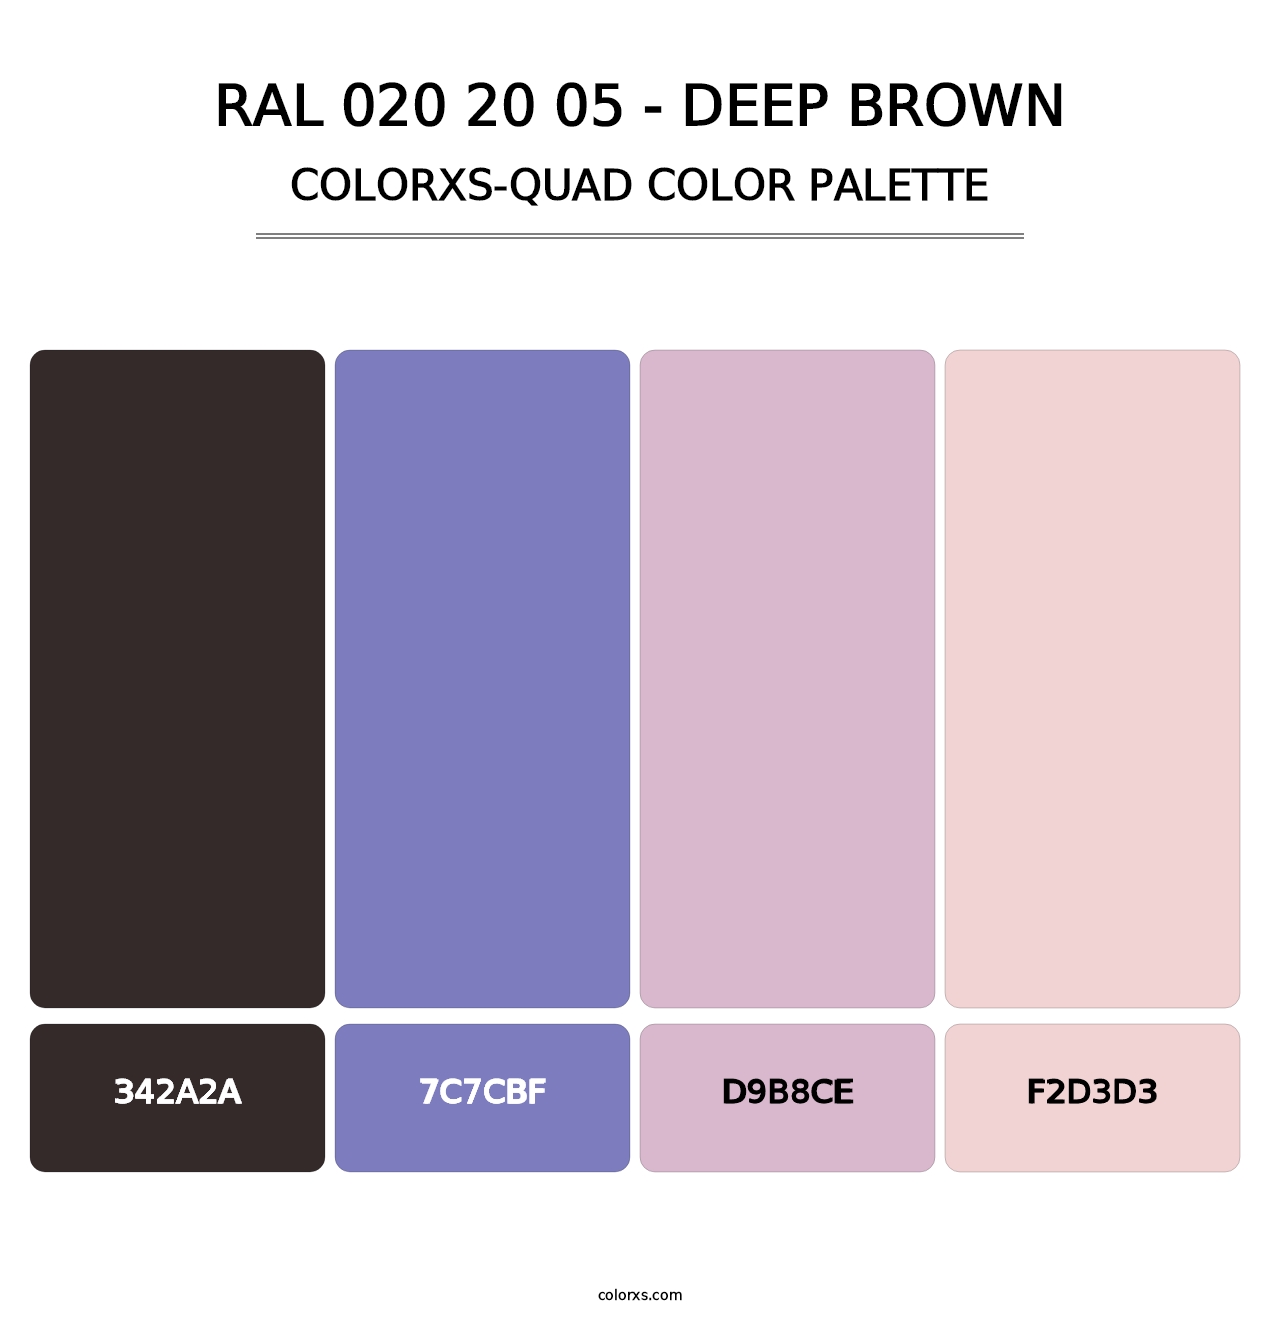 RAL 020 20 05 - Deep Brown - Colorxs Quad Palette